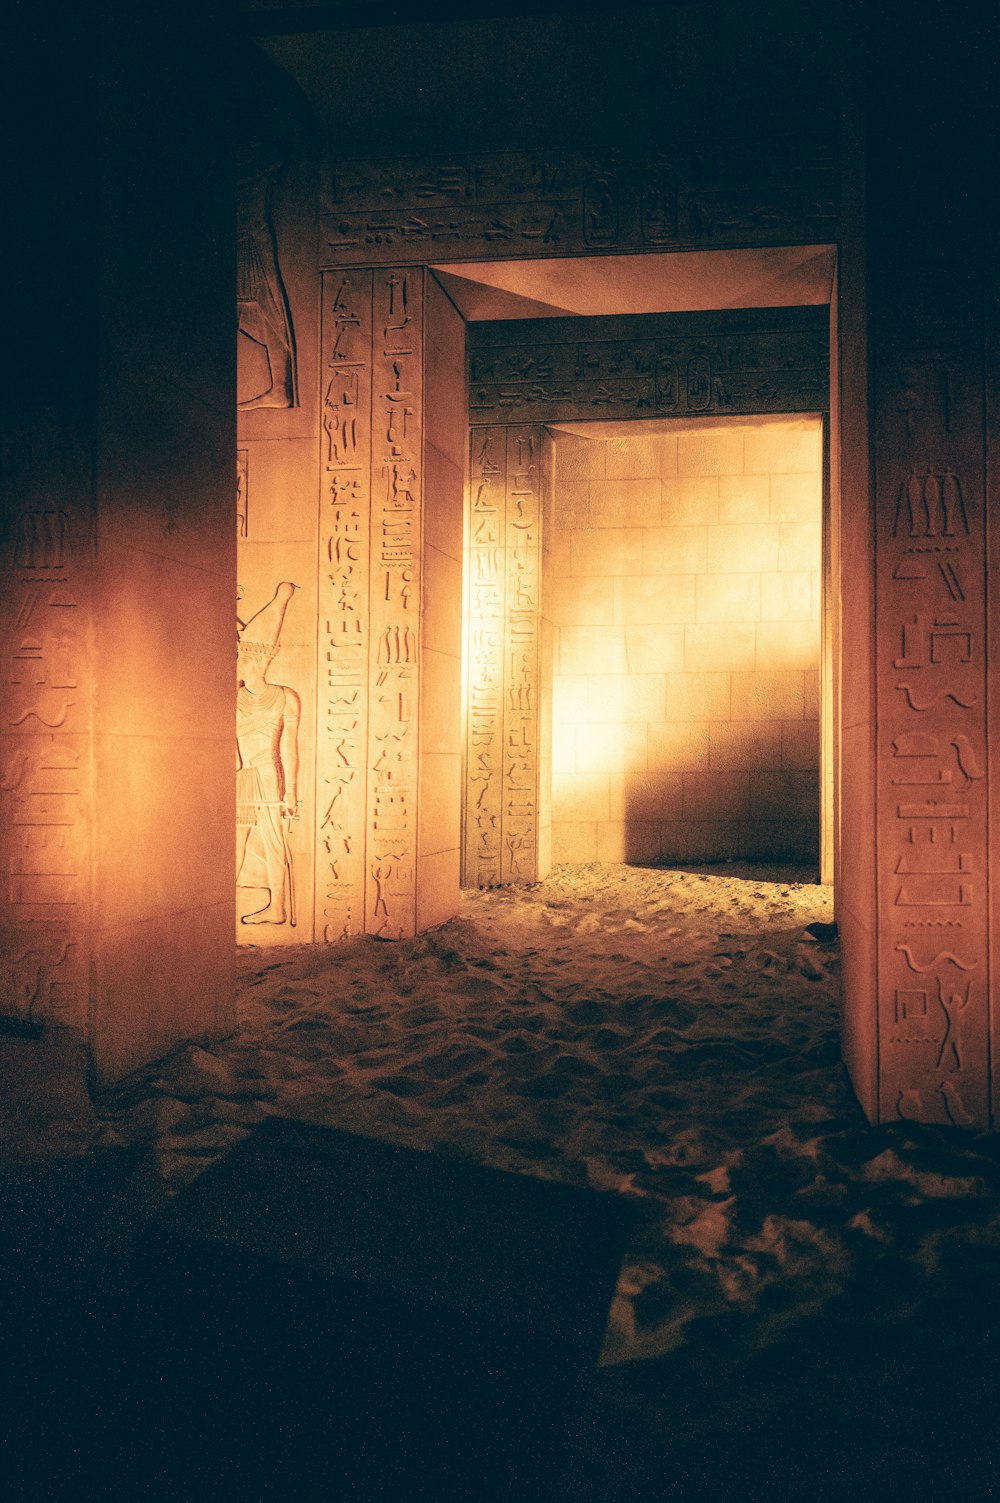 벽에 이집트 글씨가 있는 희미한 조명 방